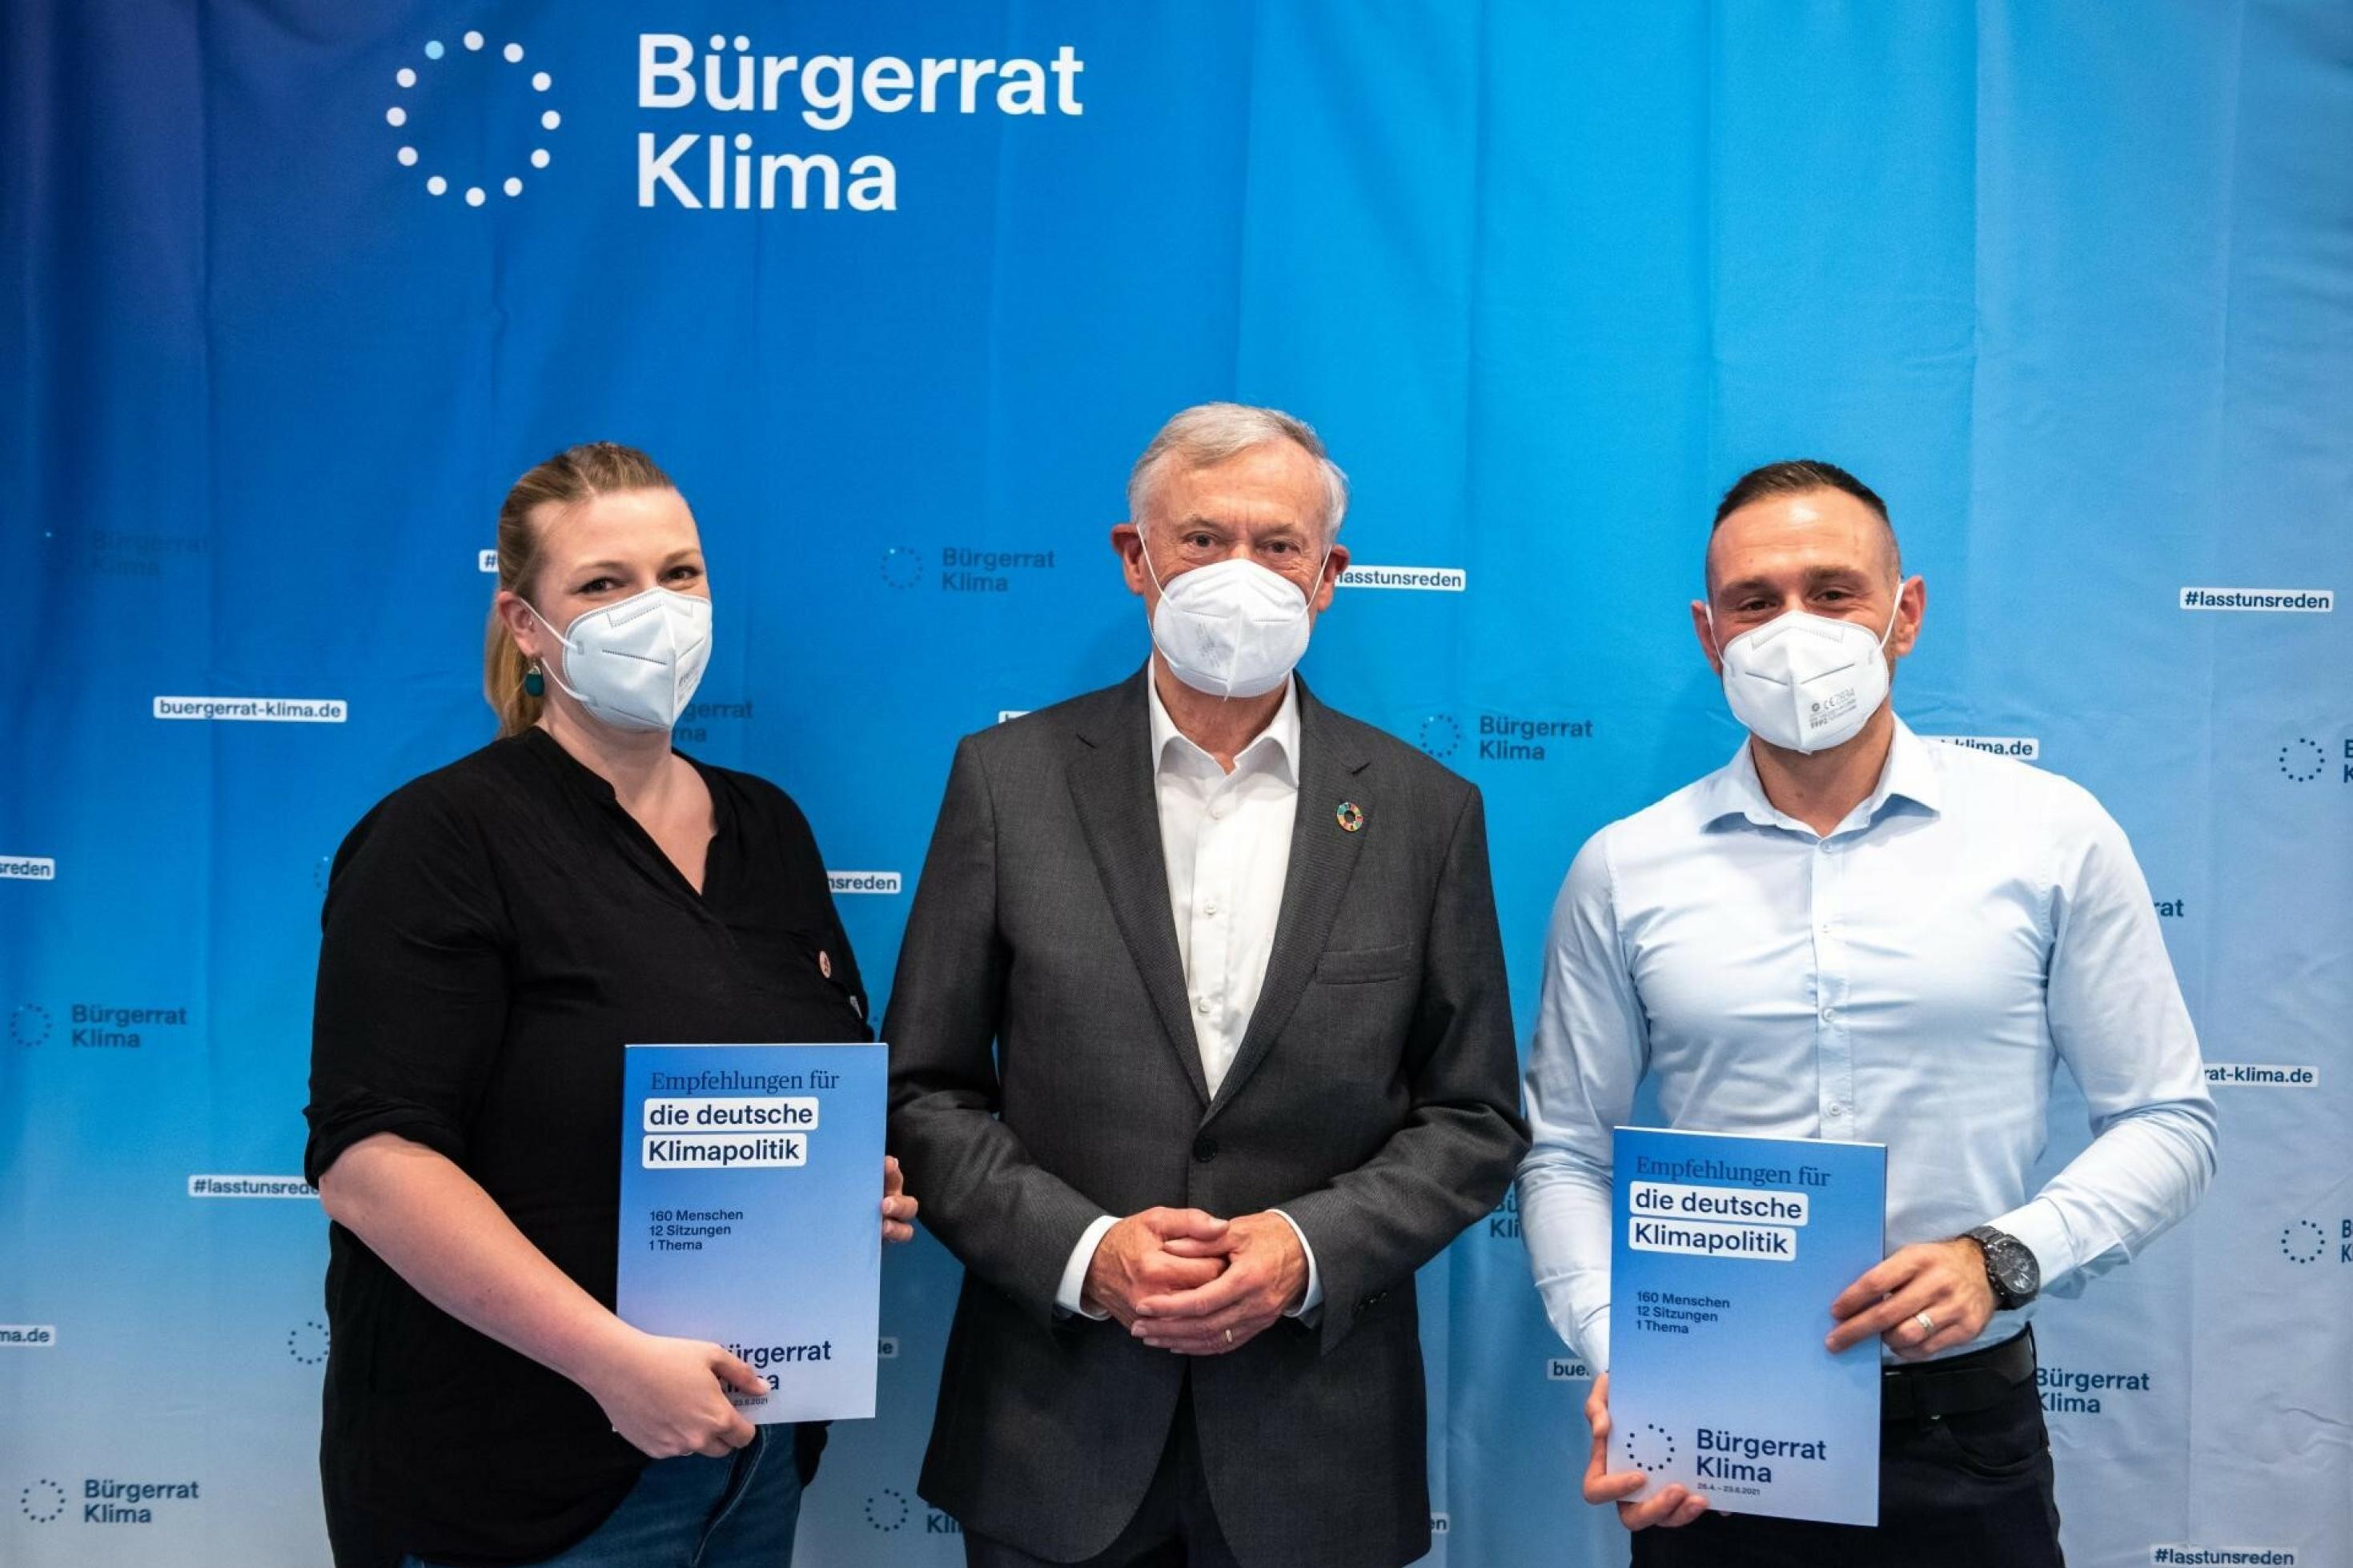 Von links nach rechts: Mareike Menneckemeyer präsentiert gemeinsam mit Schirmherr Horst Köhler und Adnan Arslan die Ergebnisse des Bürgerrat Klima